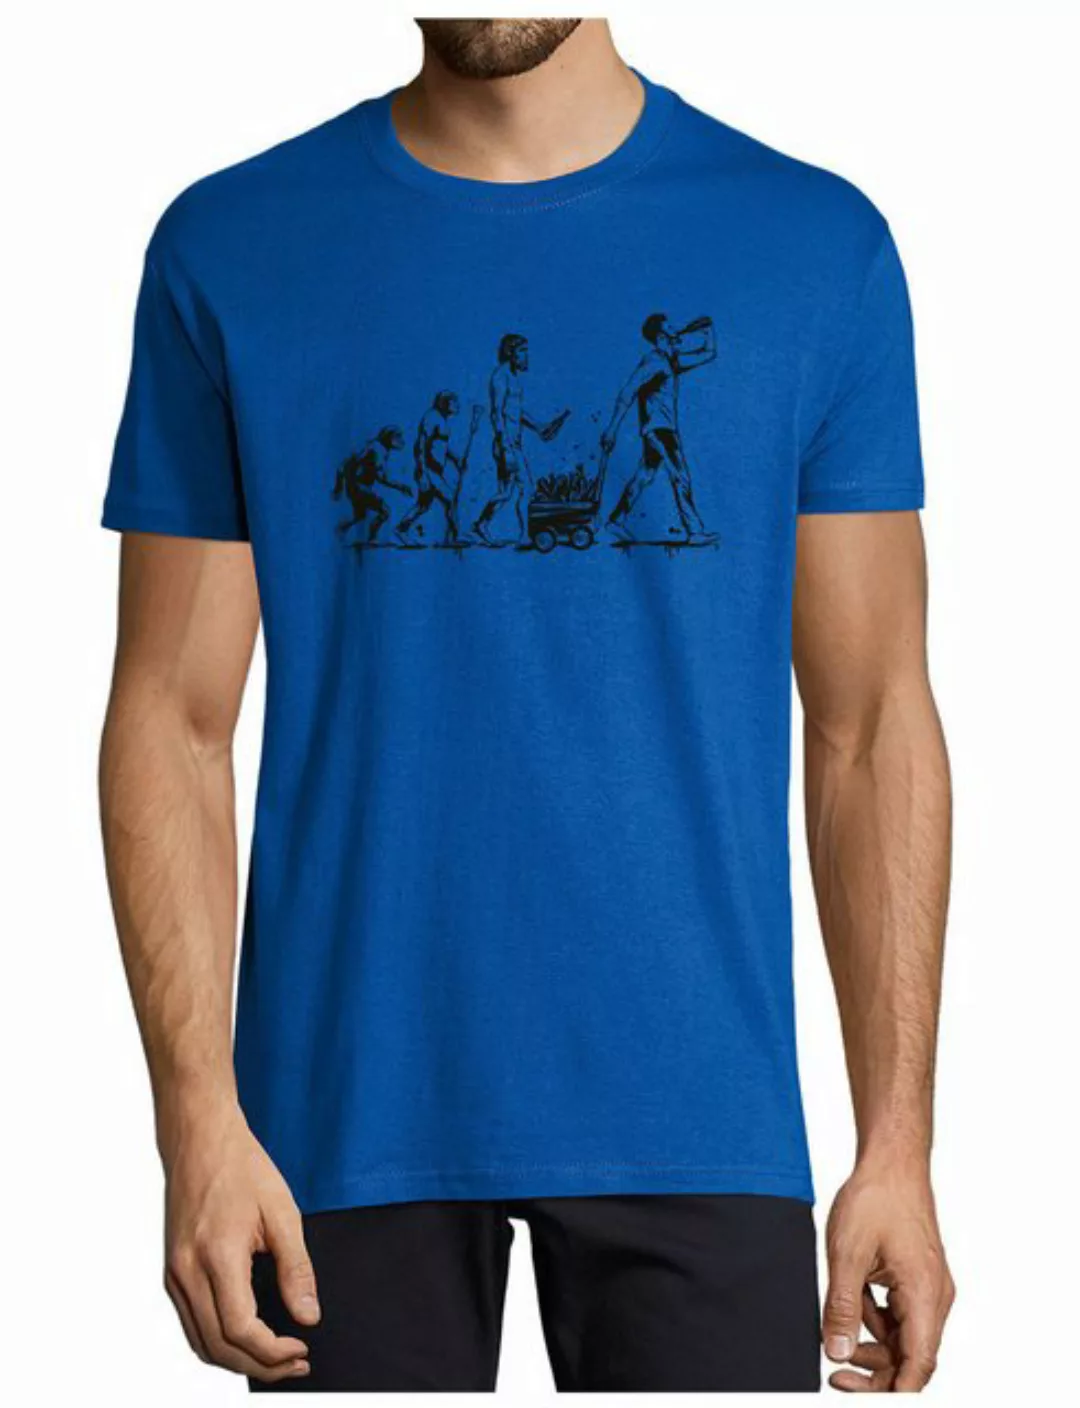 MyDesign24 T-Shirt Herren Fun Print Shirt - Trinkshirt Evolution bis zum tr günstig online kaufen